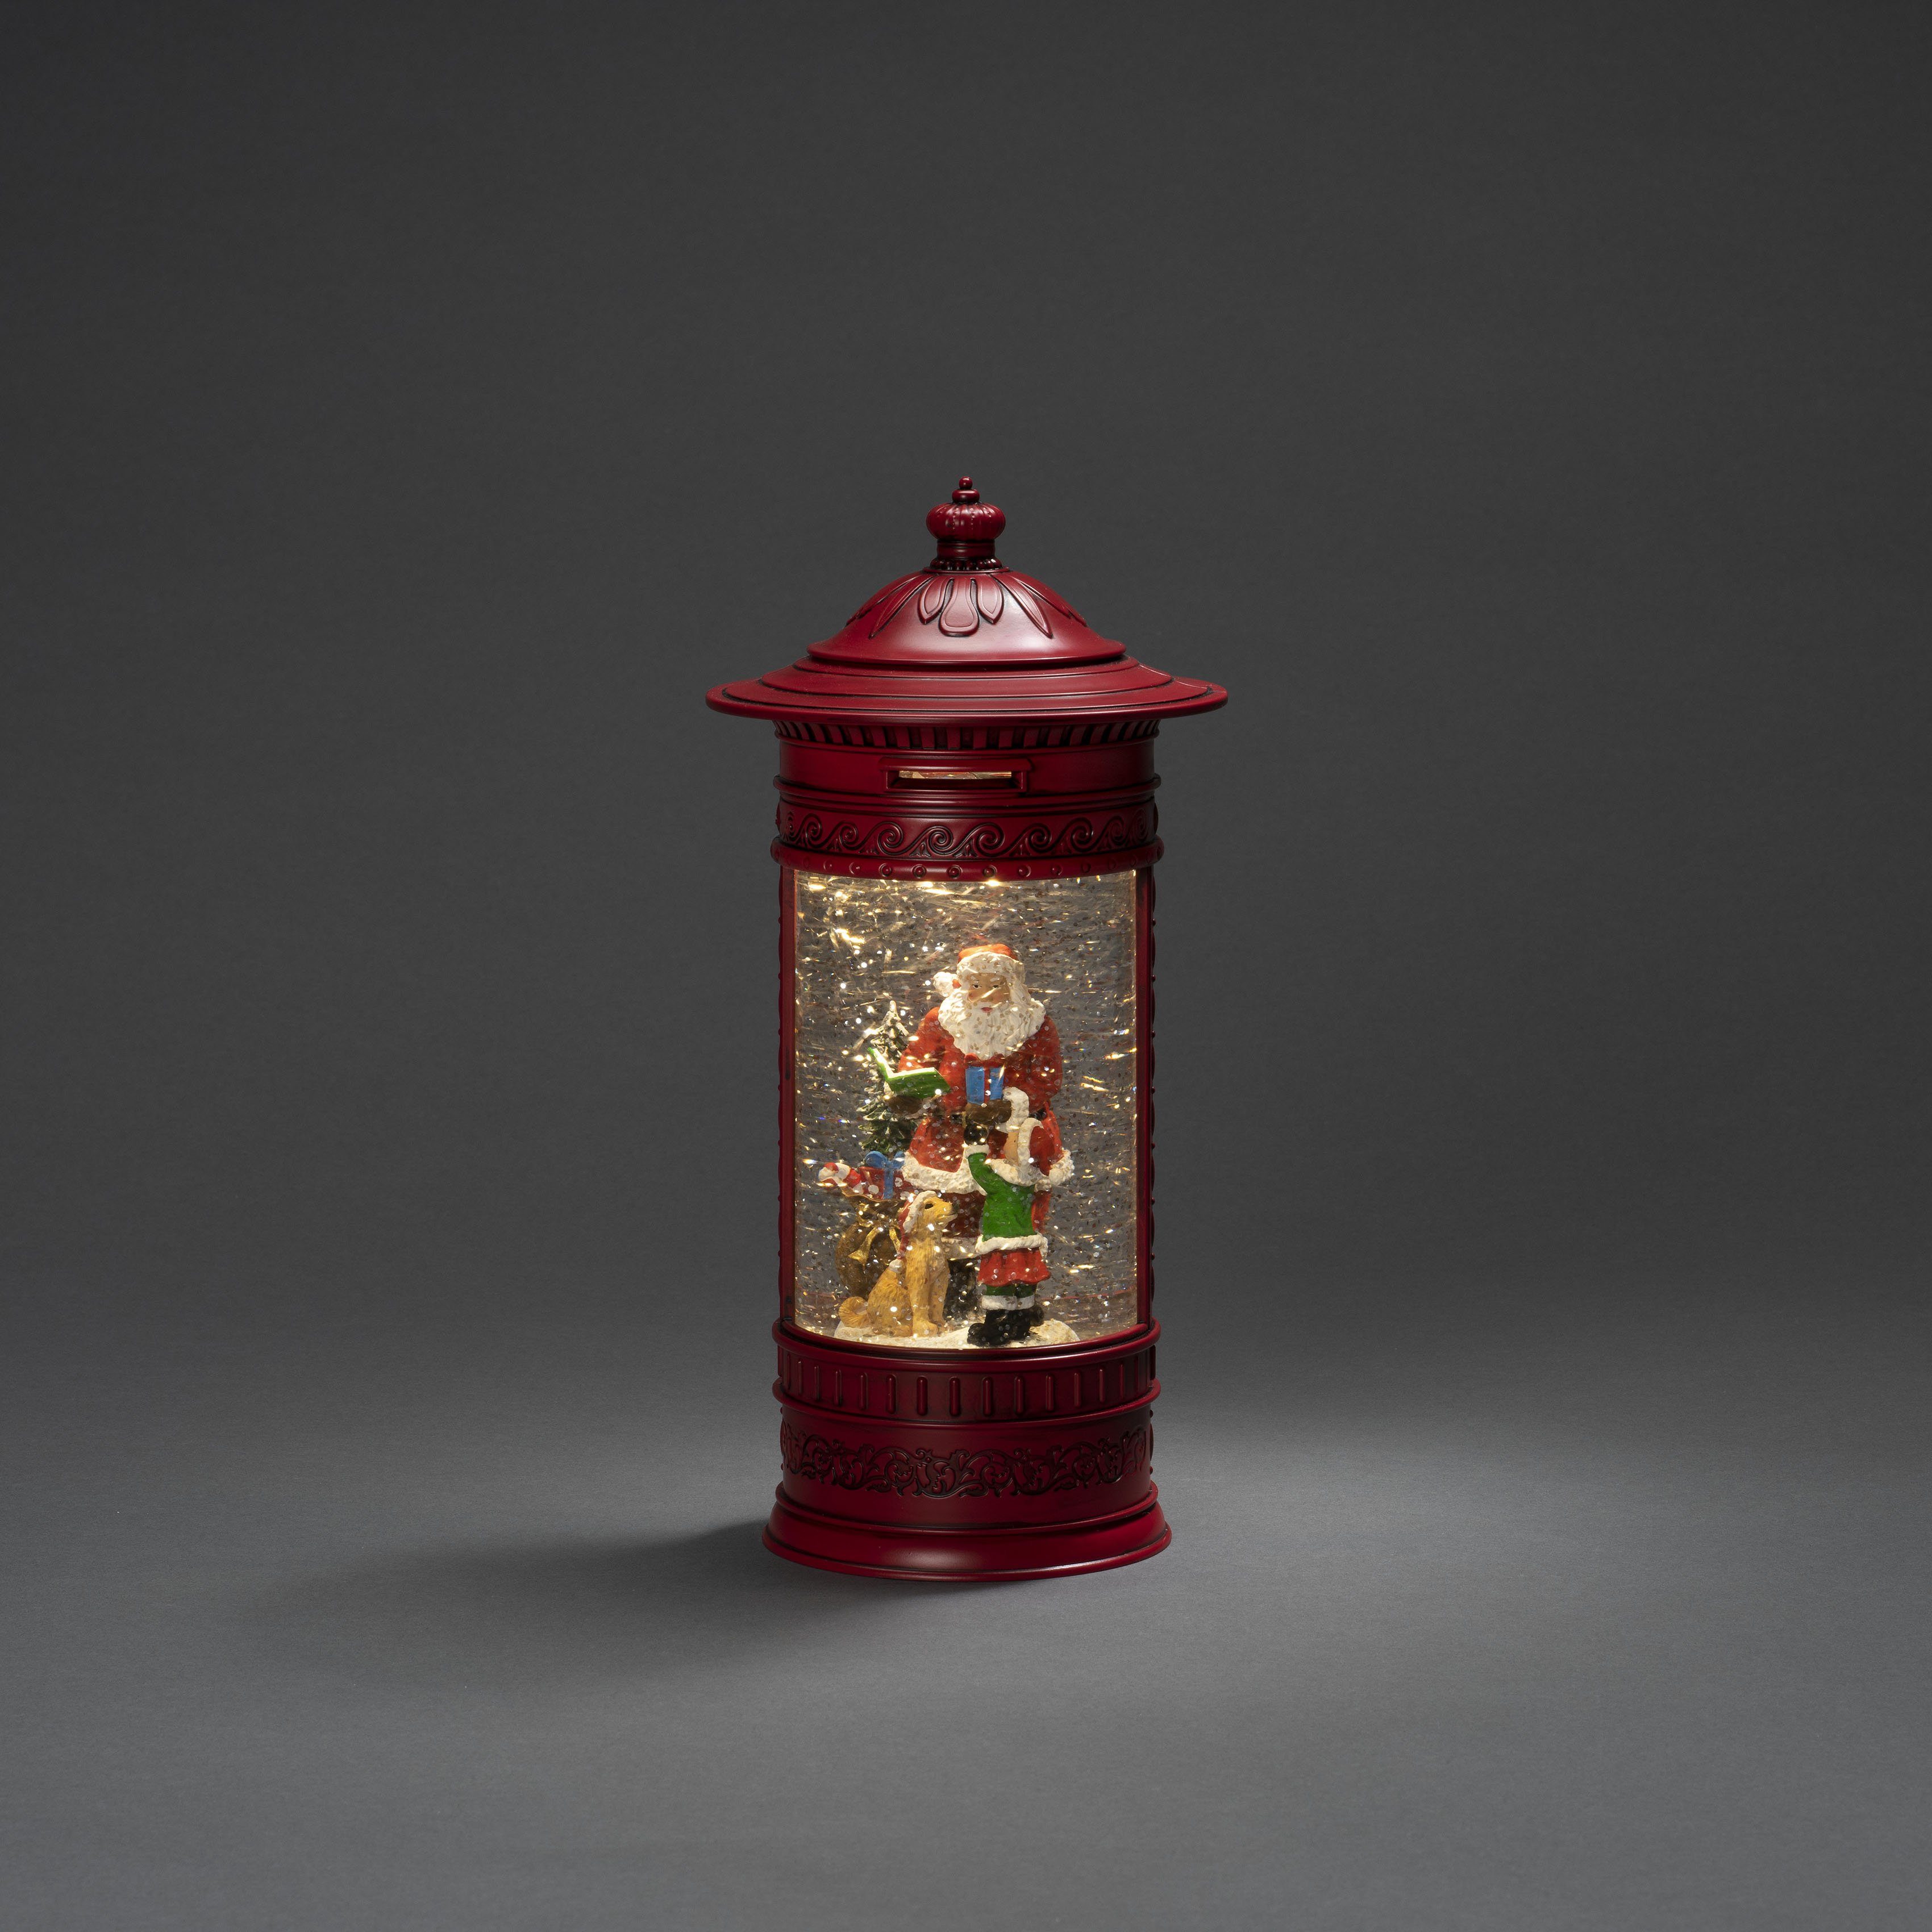 KONSTSMIDE Wasserlaterne, mit Kind rot, "Weihnachtsmann Laterne Hund" Weihnachtsdeko integriert, Briefkasten, fest rot, LED LED Warmweiß, + LED